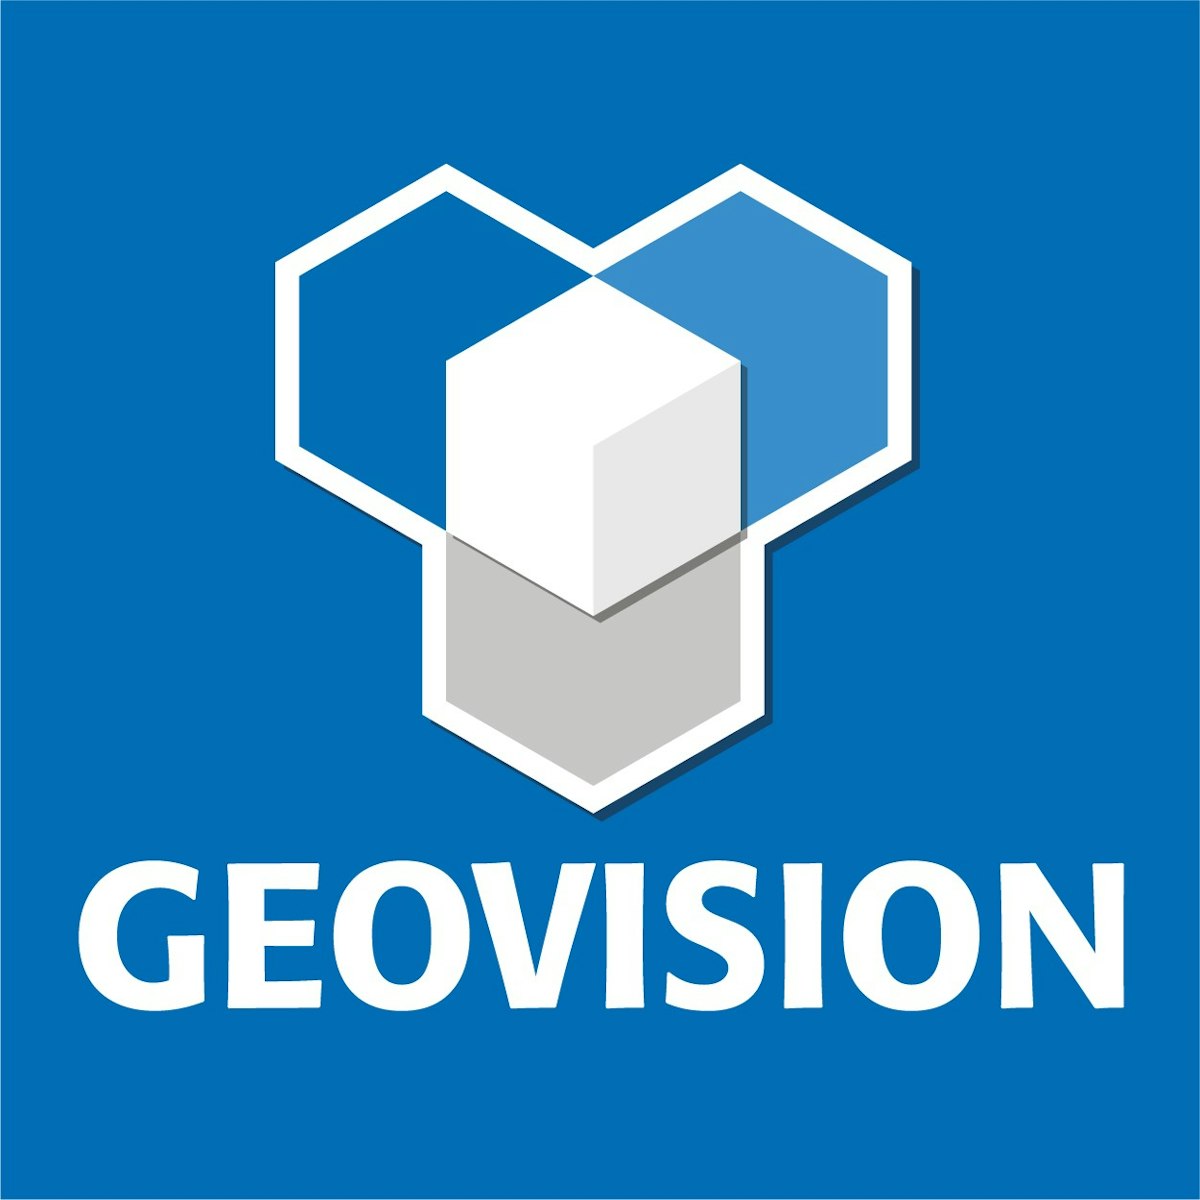 App-entwicklung Agentur Geovision GmbH & Co. KG